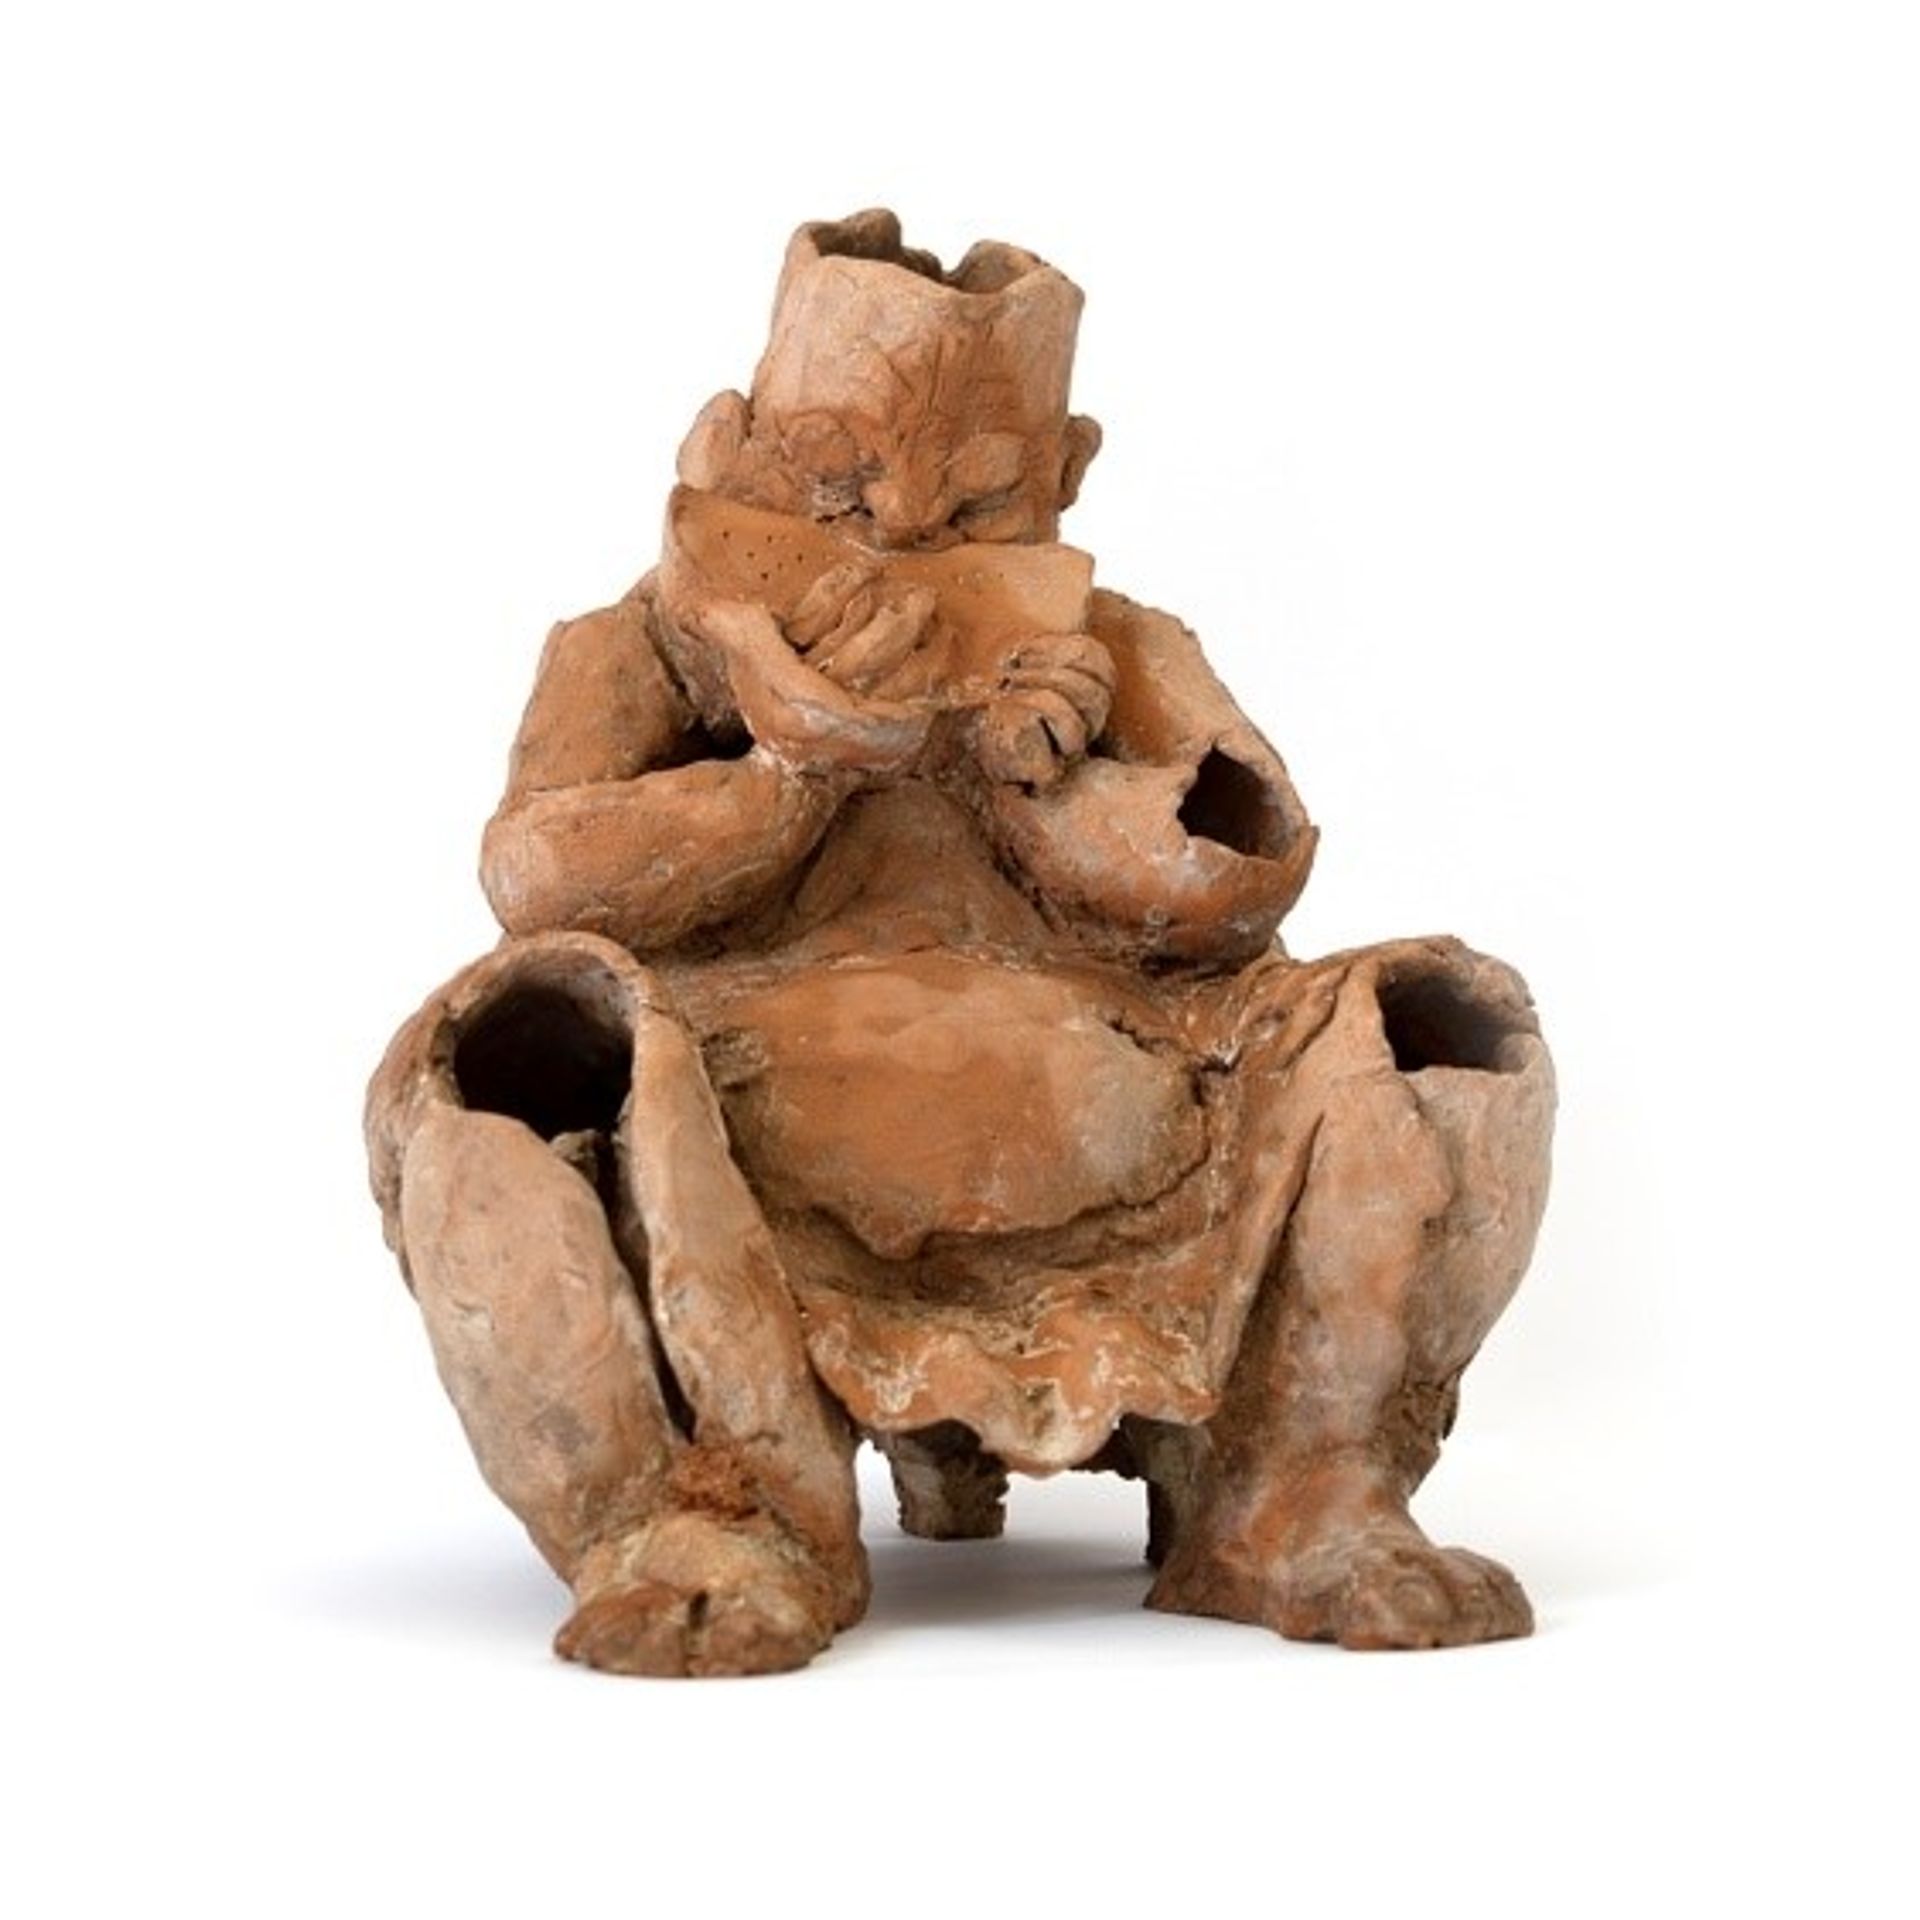 סגנון הפיסול של גוטמן מדגיש את נפחיות הגוף ומתאר דמויות גשמיות ואורגניות 

צילום: מוזיאון נחום גוטמן